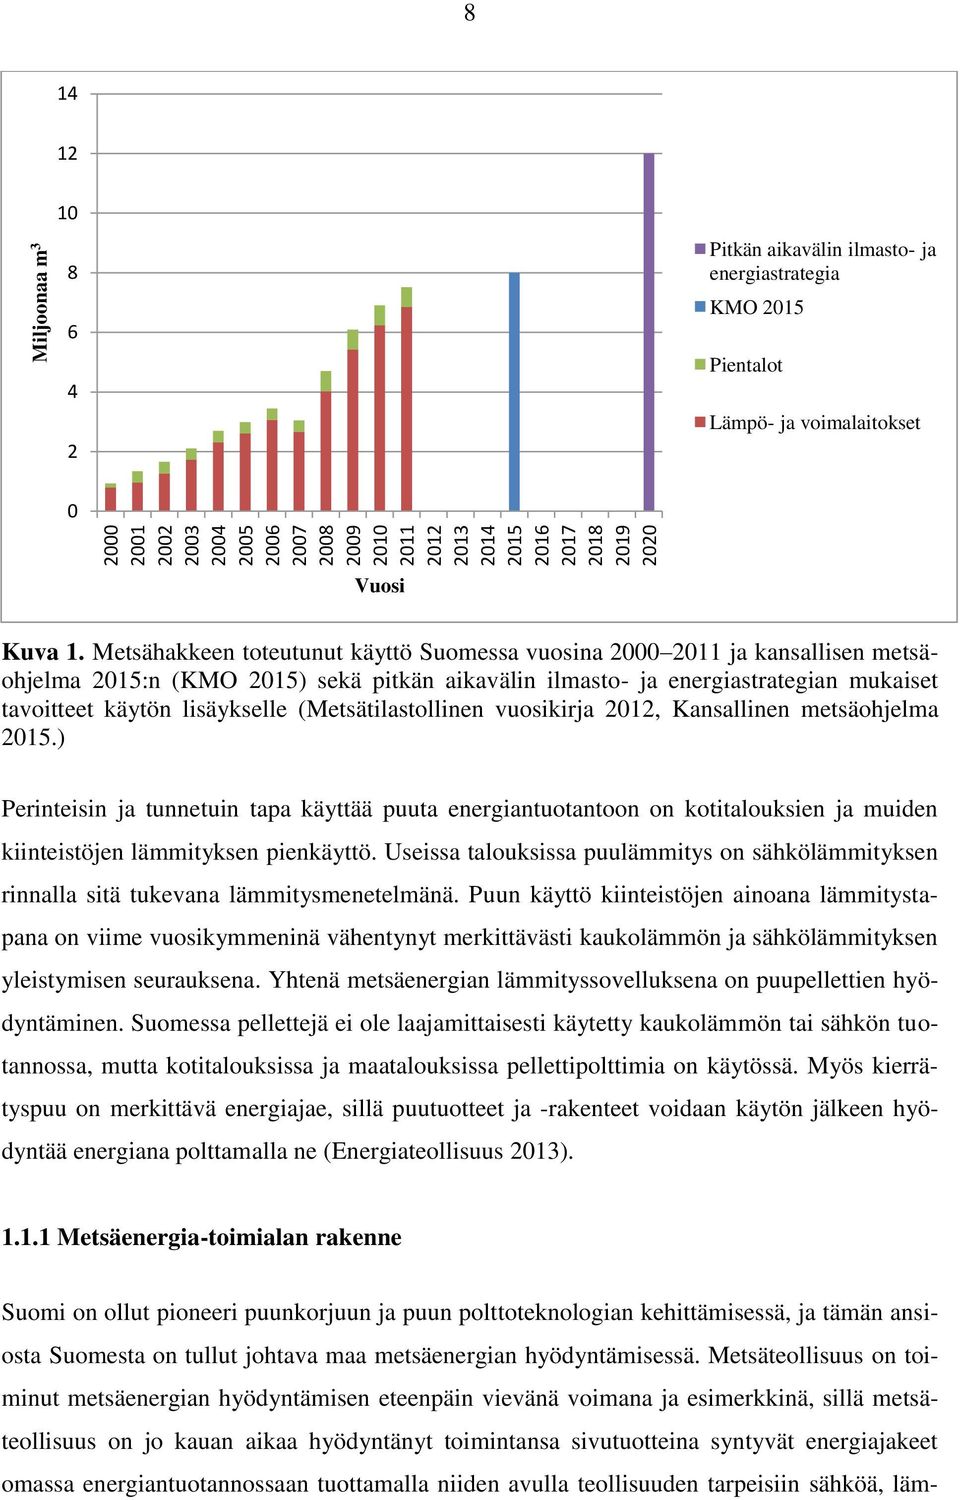 Metsähakkeen toteutunut käyttö Suomessa vuosina 2000 2011 ja kansallisen metsäohjelma 2015:n (KMO 2015) sekä pitkän aikavälin ilmasto- ja energiastrategian mukaiset tavoitteet käytön lisäykselle